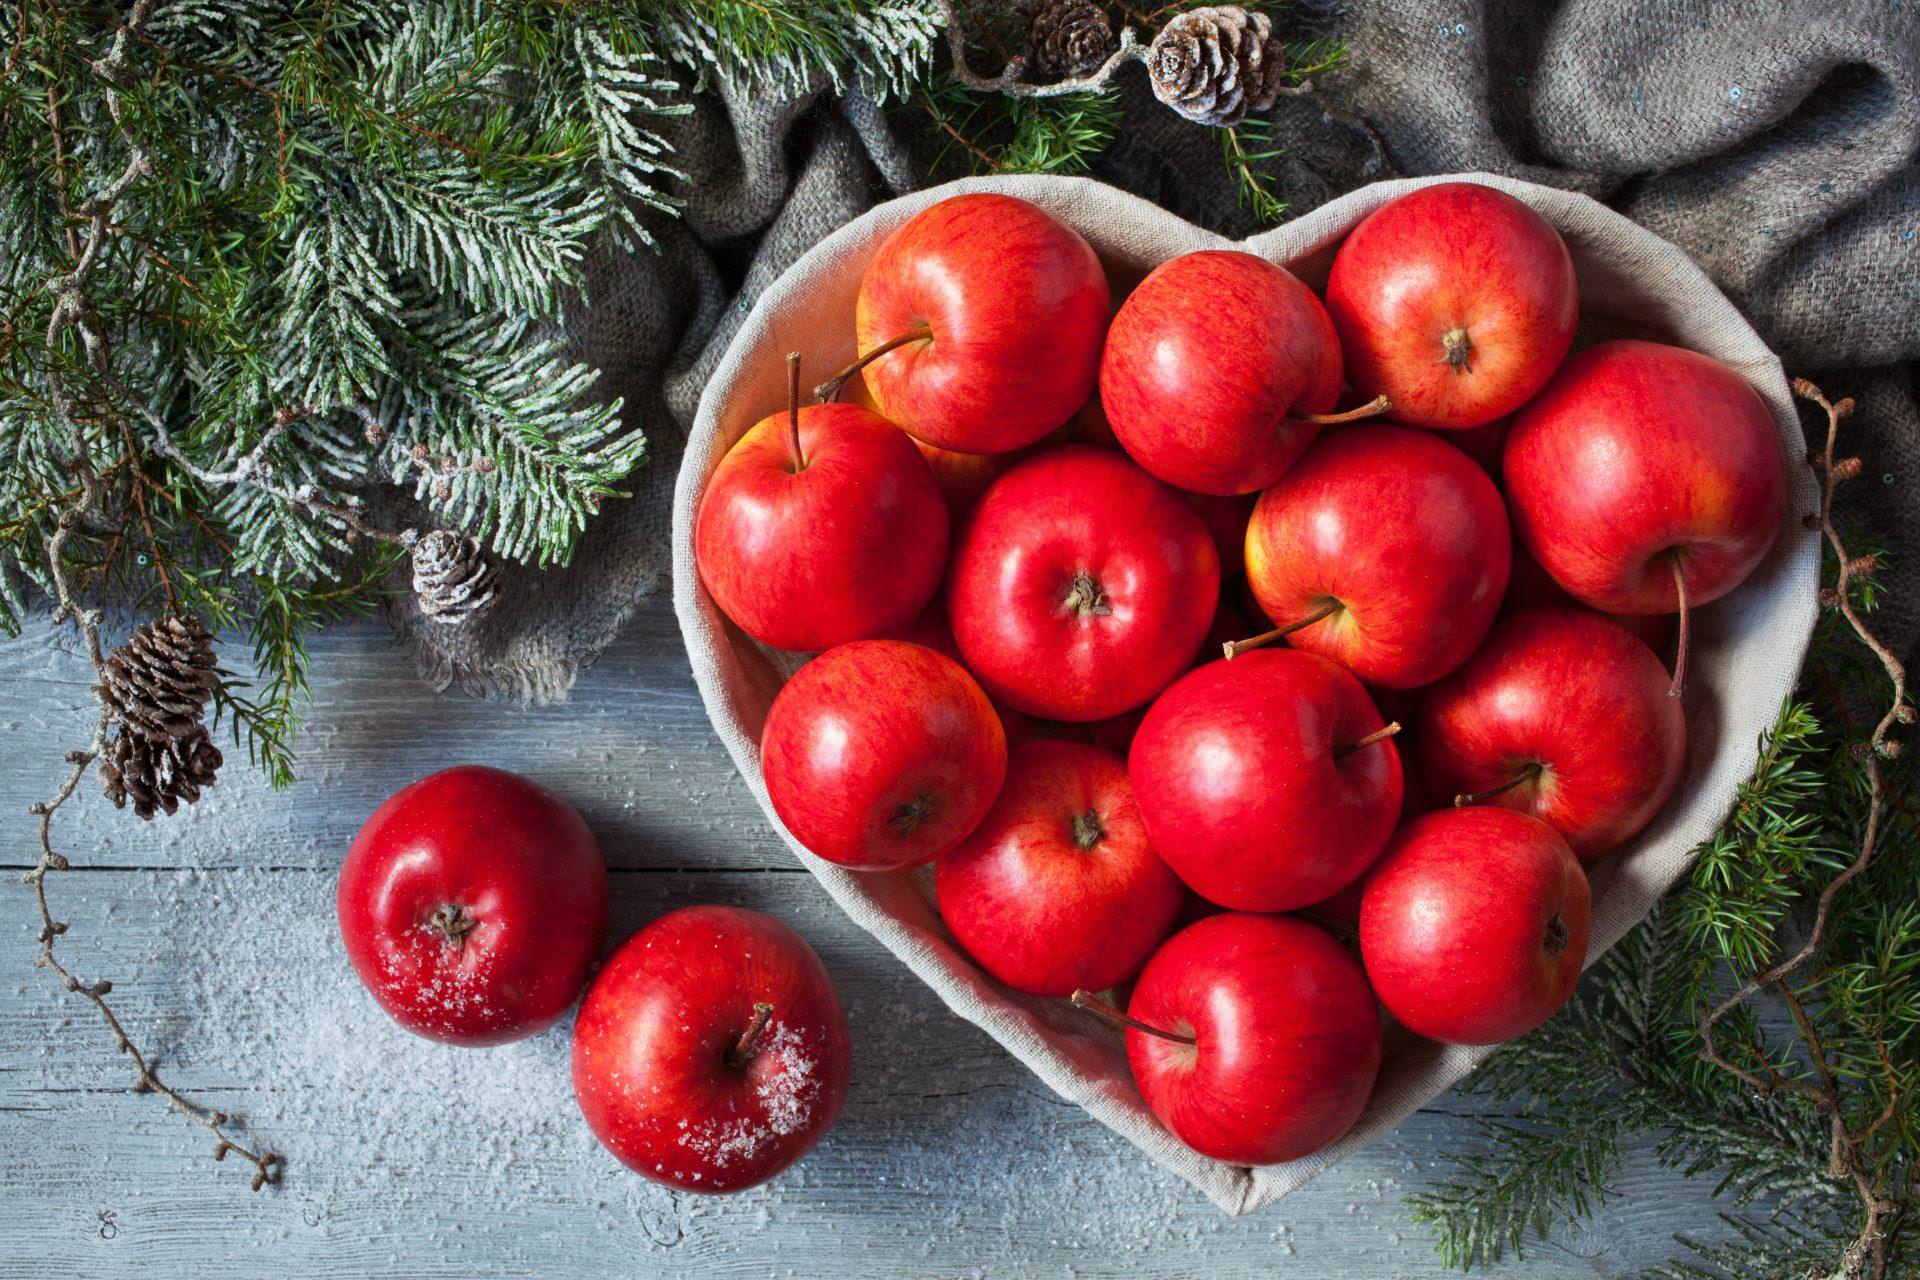 Warzywno-owocowy detoks przed Świętami?